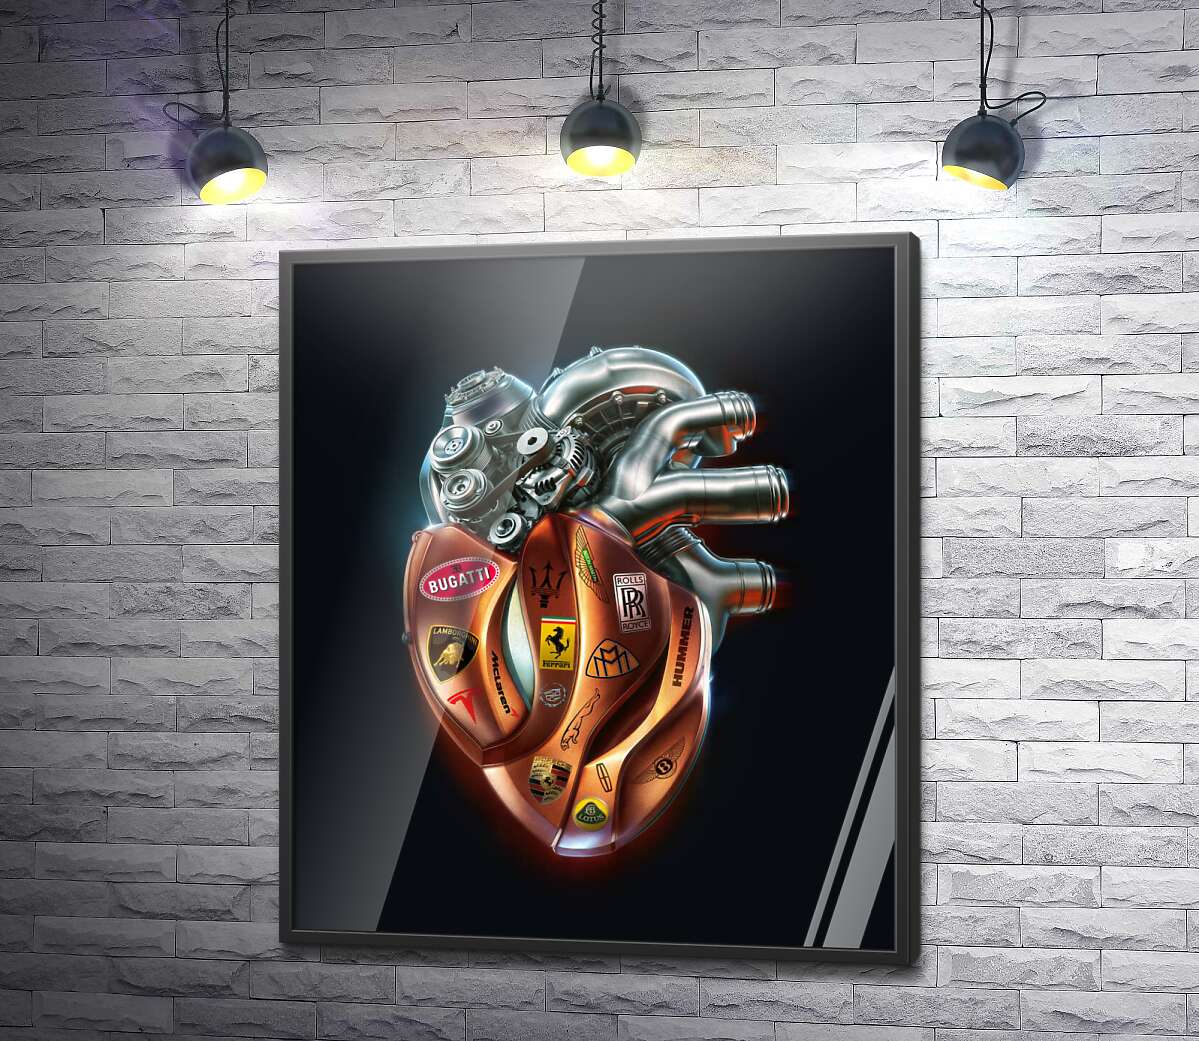 постер Сердце-мотор с наклейками брендов люксовых авто